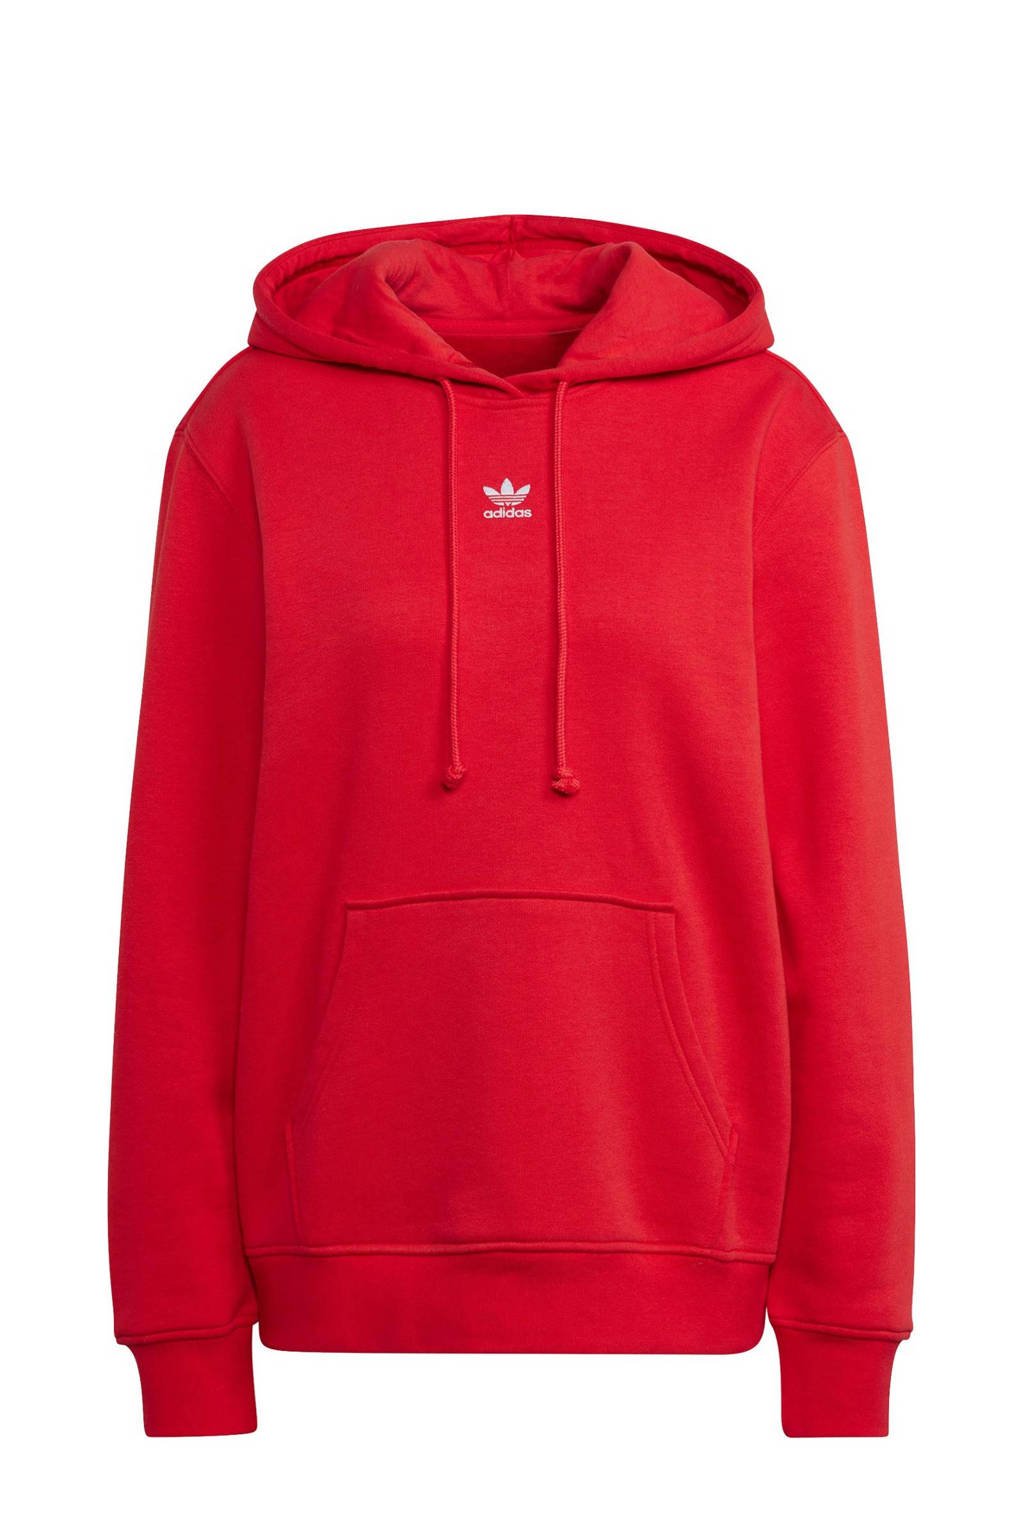 Rode dames adidas Originals hoodie van katoen met lange mouwen, capuchon en geribde boorden